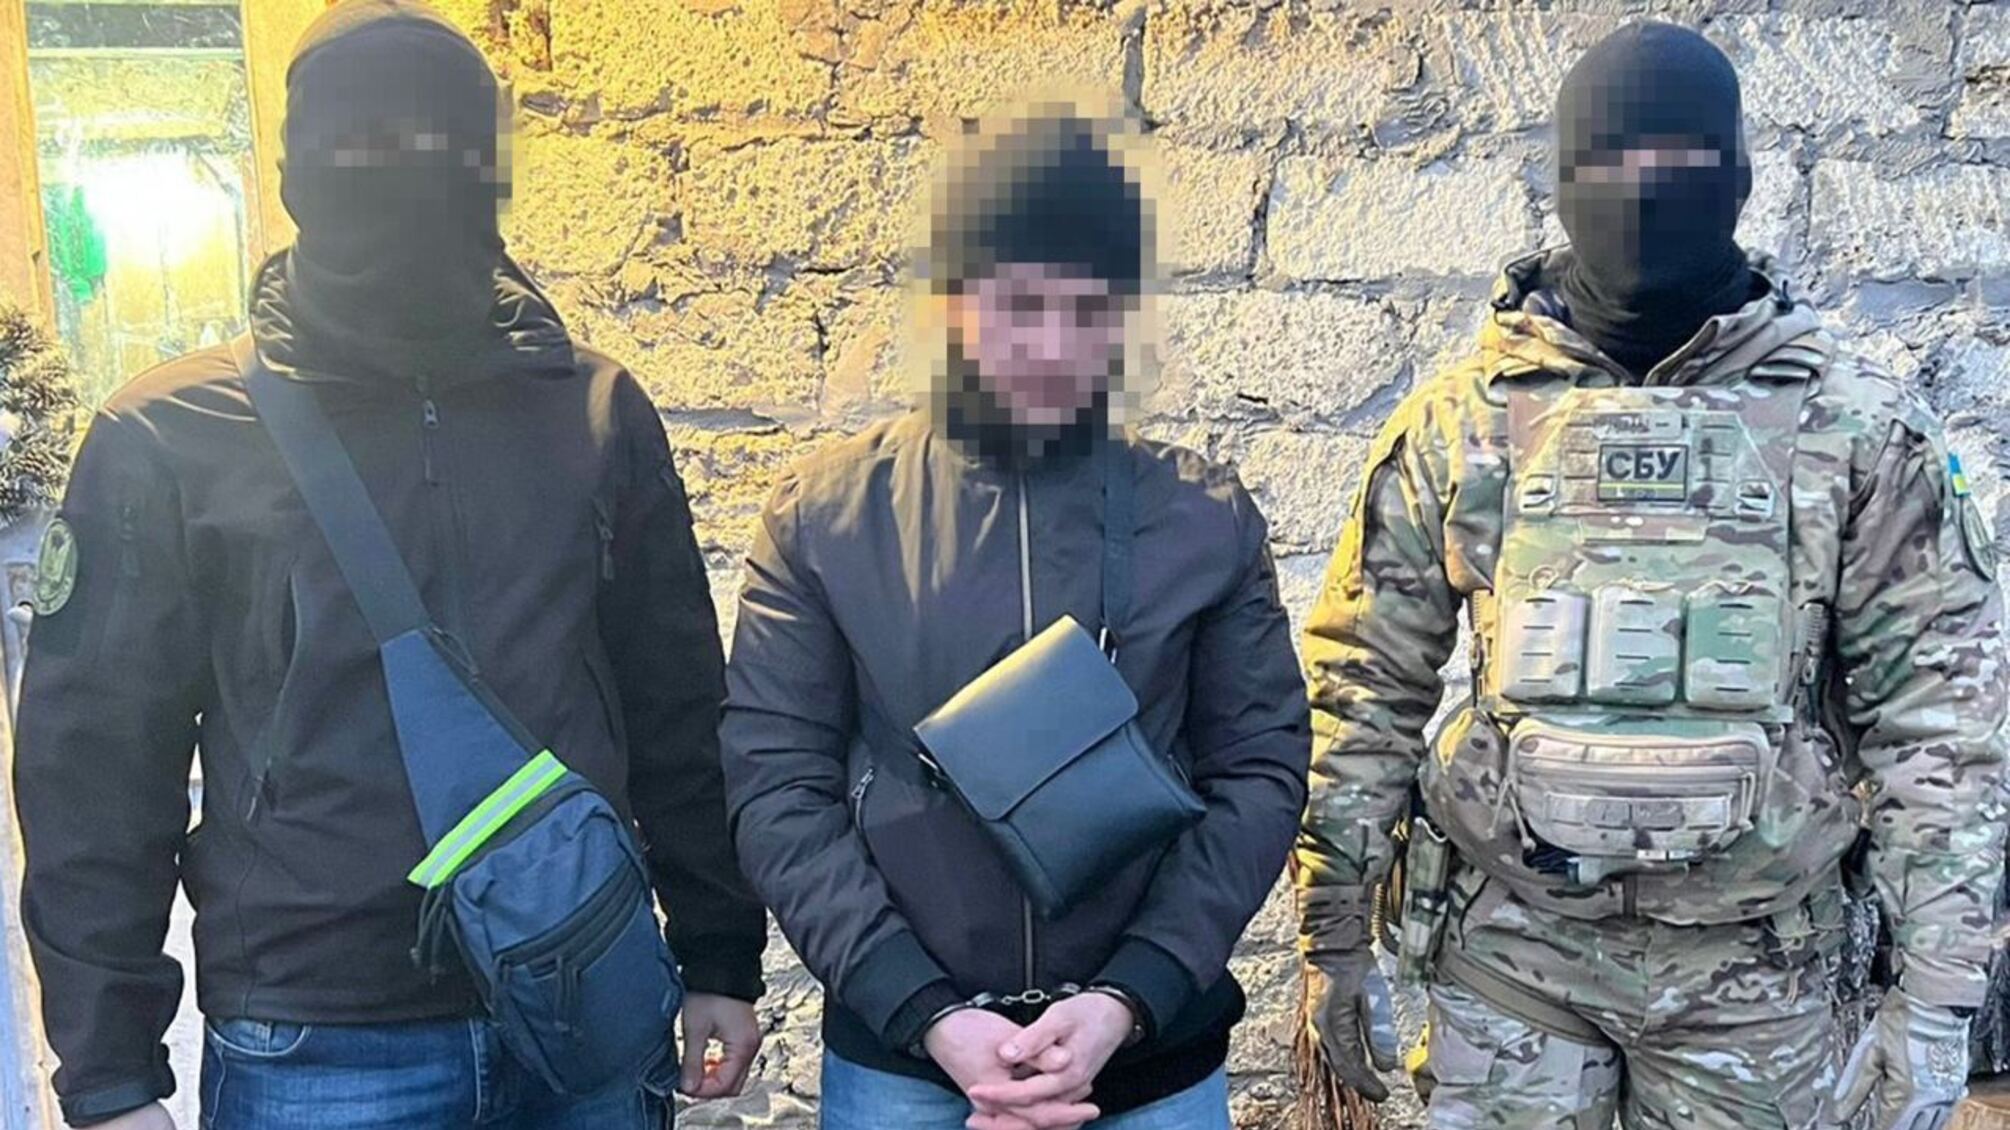  У Миколаєві затримали зрадника, який шпигував для фсб: йому загрожує 15 років тюрми 